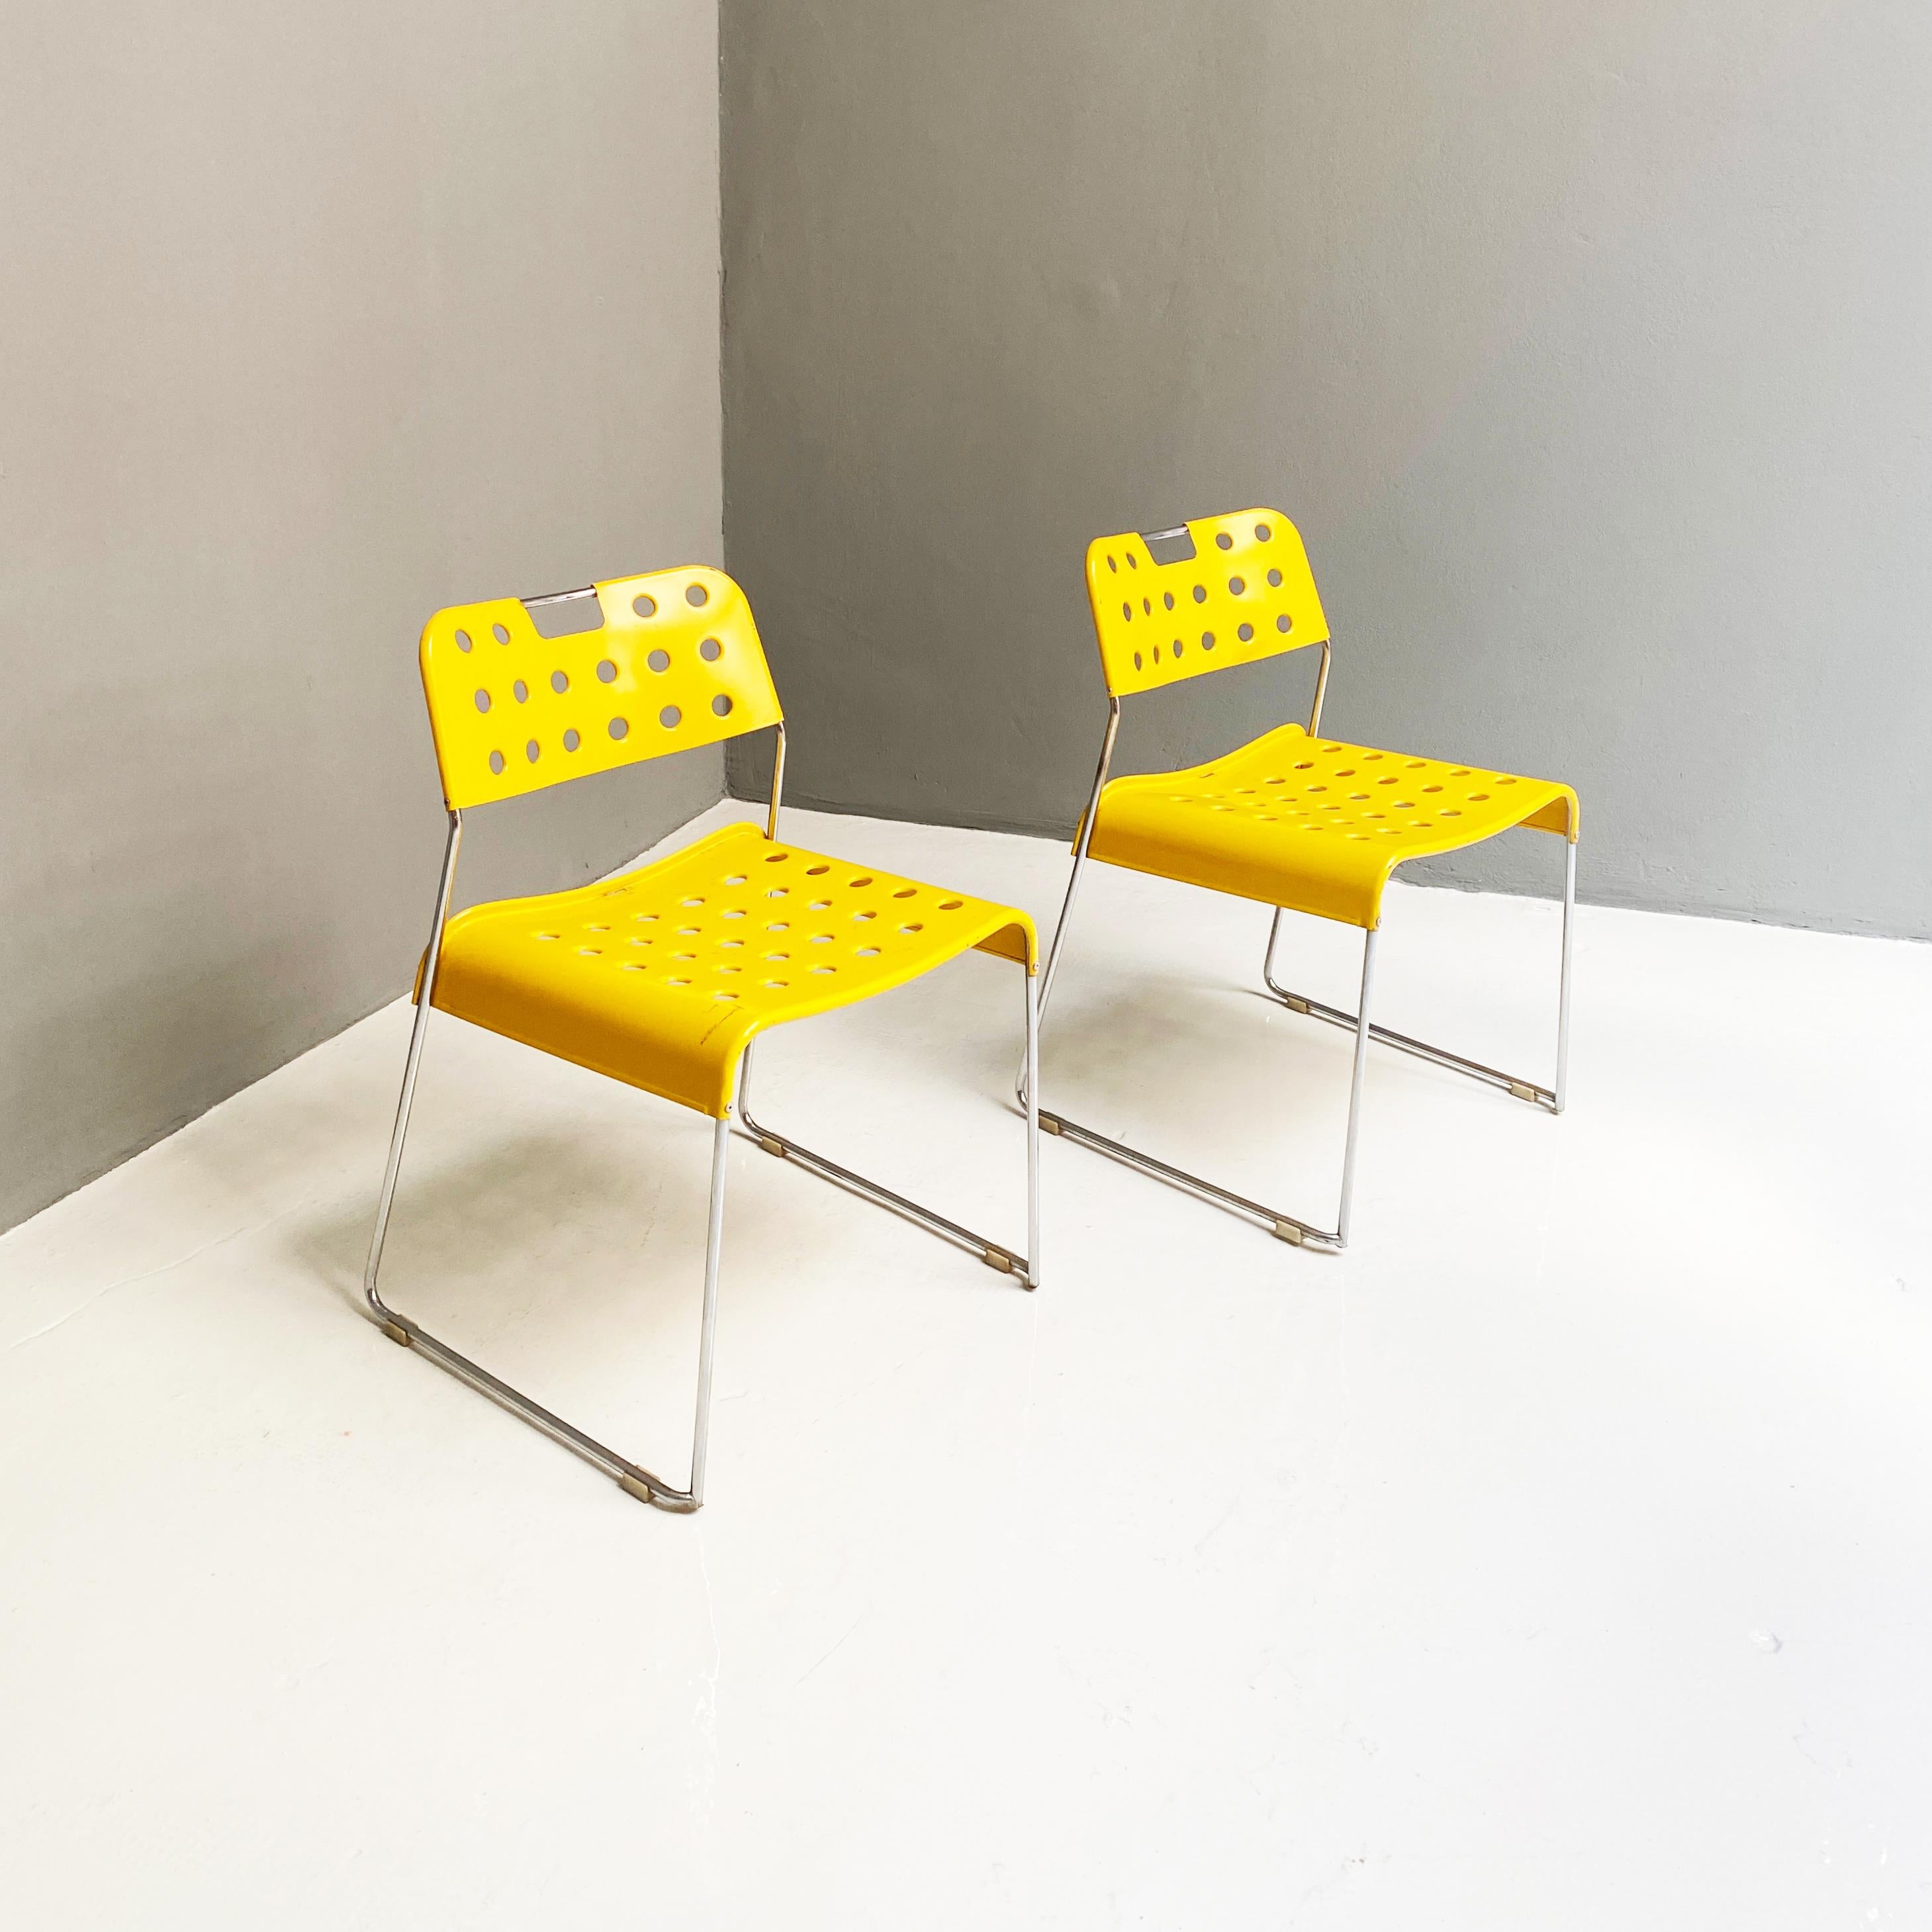 Italian Modern metal Yellow chairs Omstak by Rodney Kinsman for Bieffeplast, 1970s